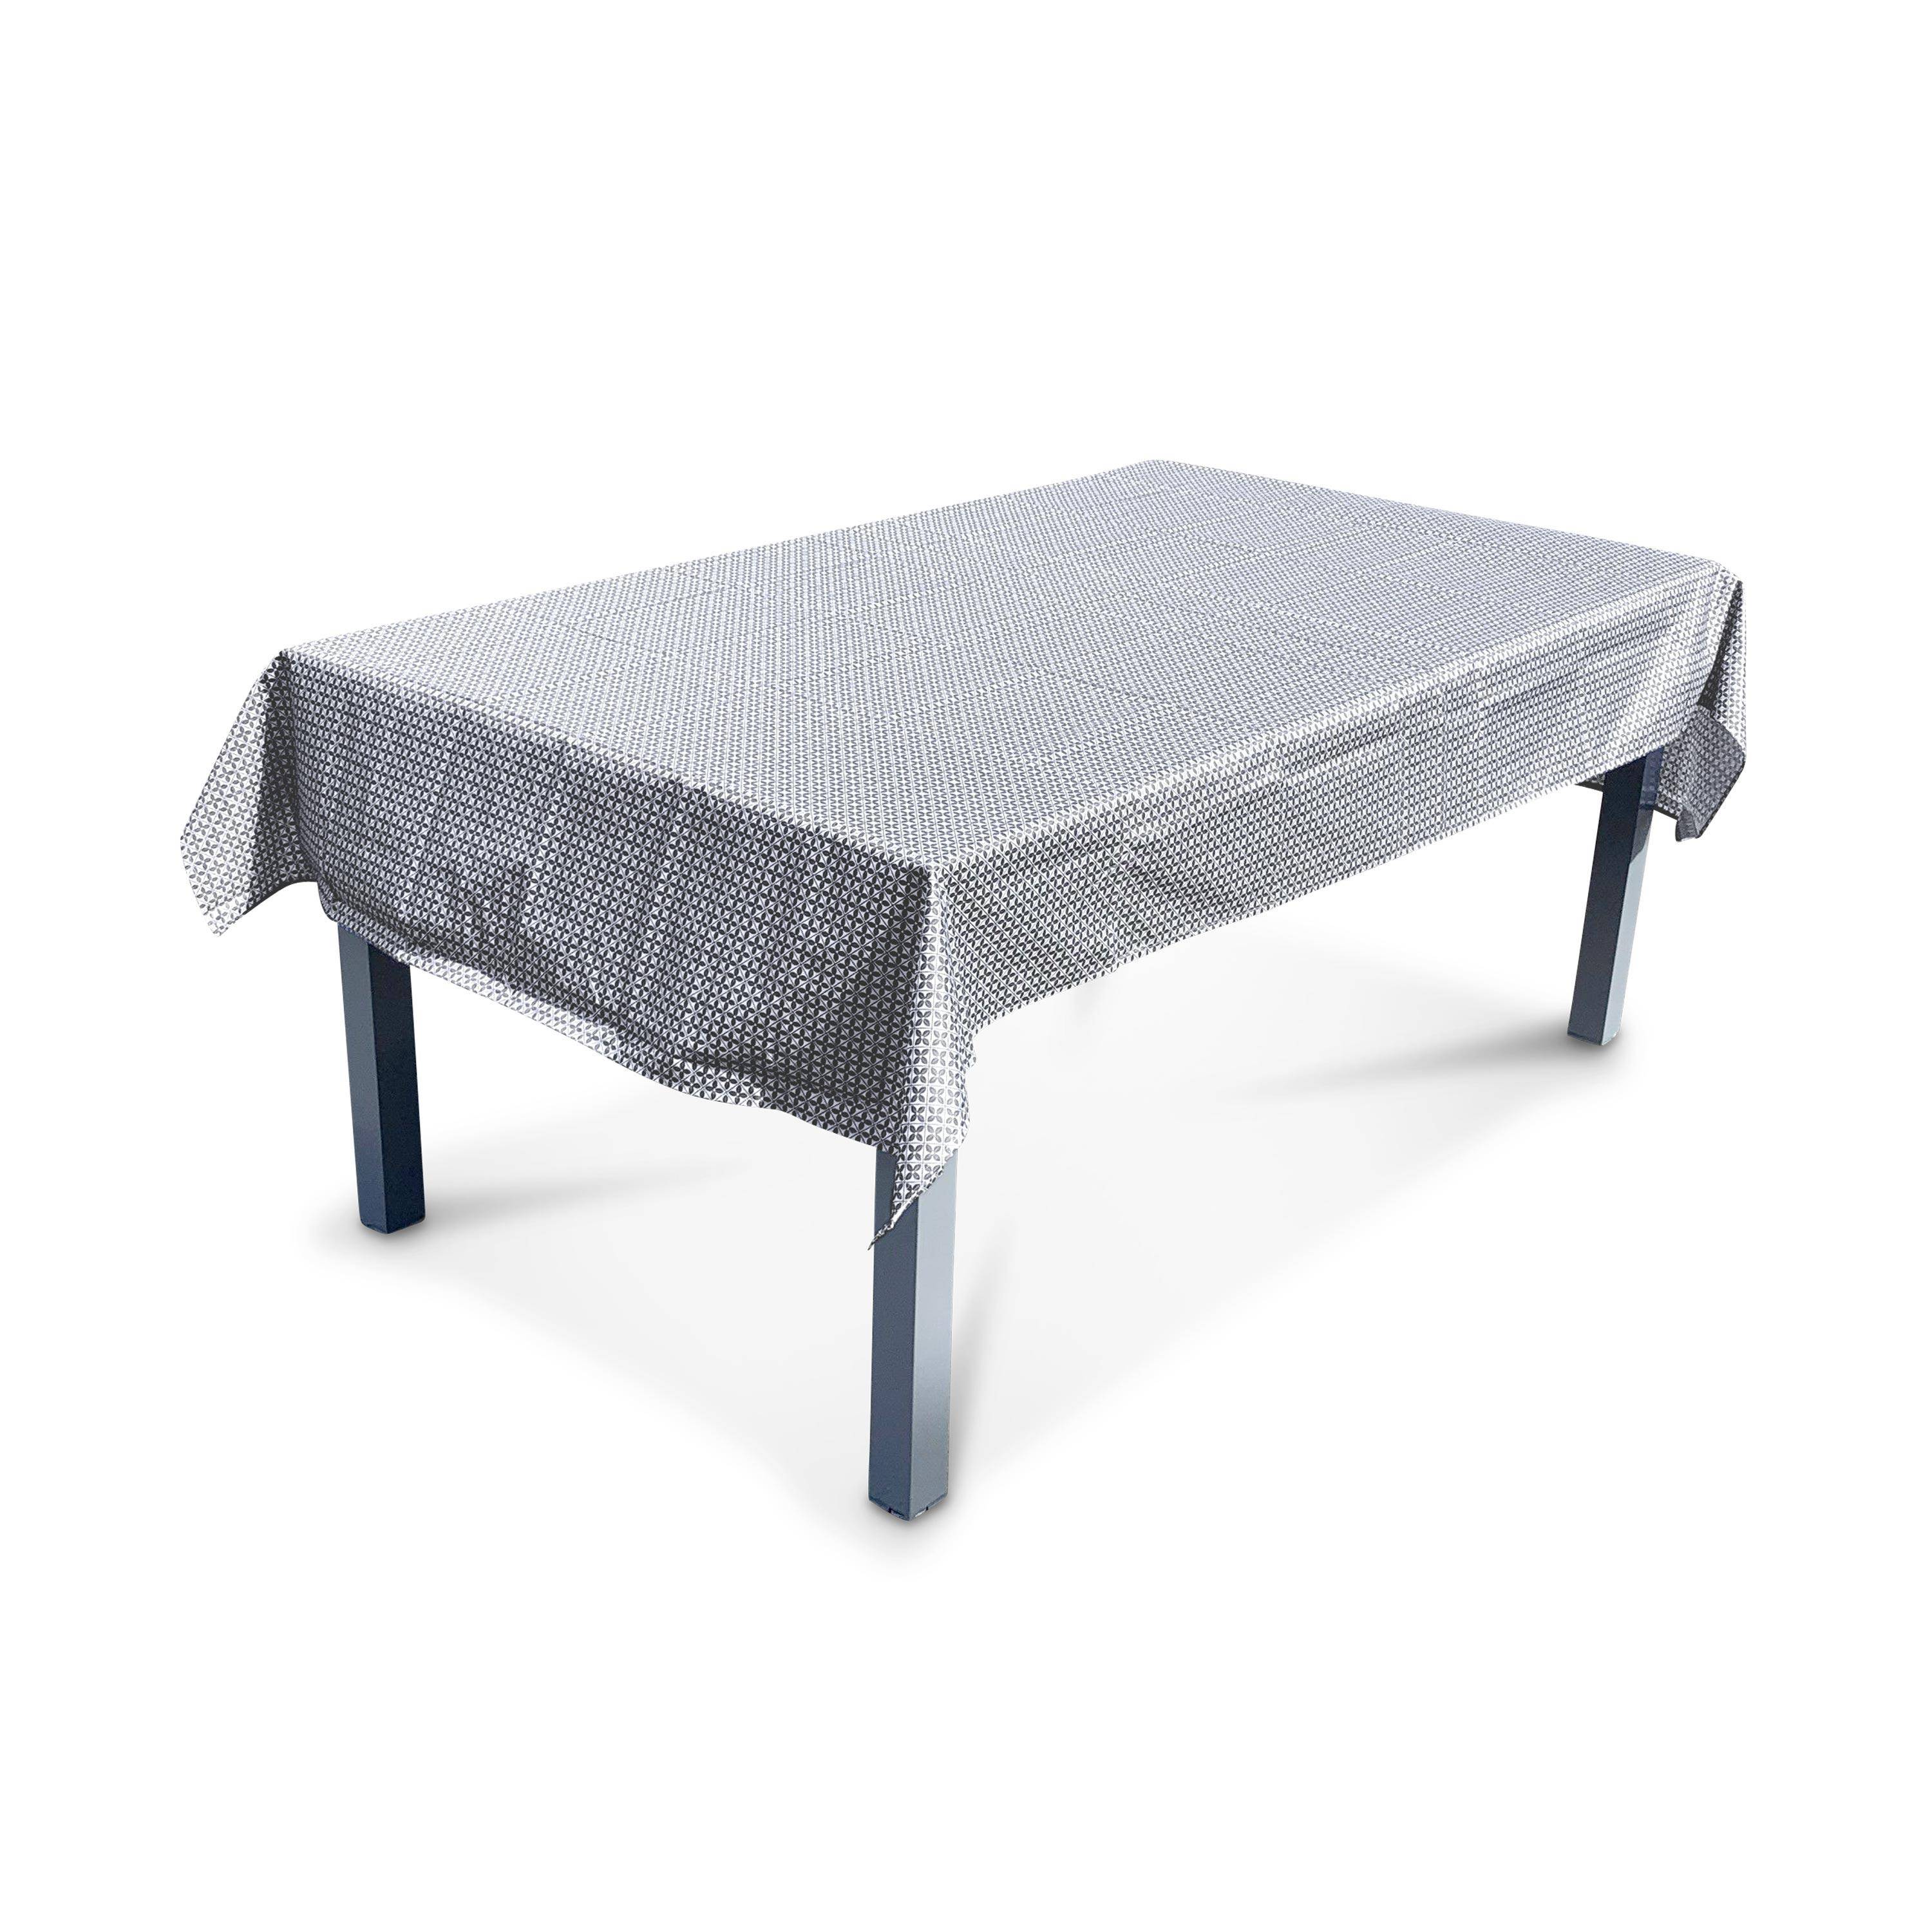 Kollektion HERITAGE - Outdoor-Tischdecke 140 x 240 cm Zementfliesendruck, 100% Polyester, schützt den Tisch, UV-Schutz, sommerlicher Stil Photo1